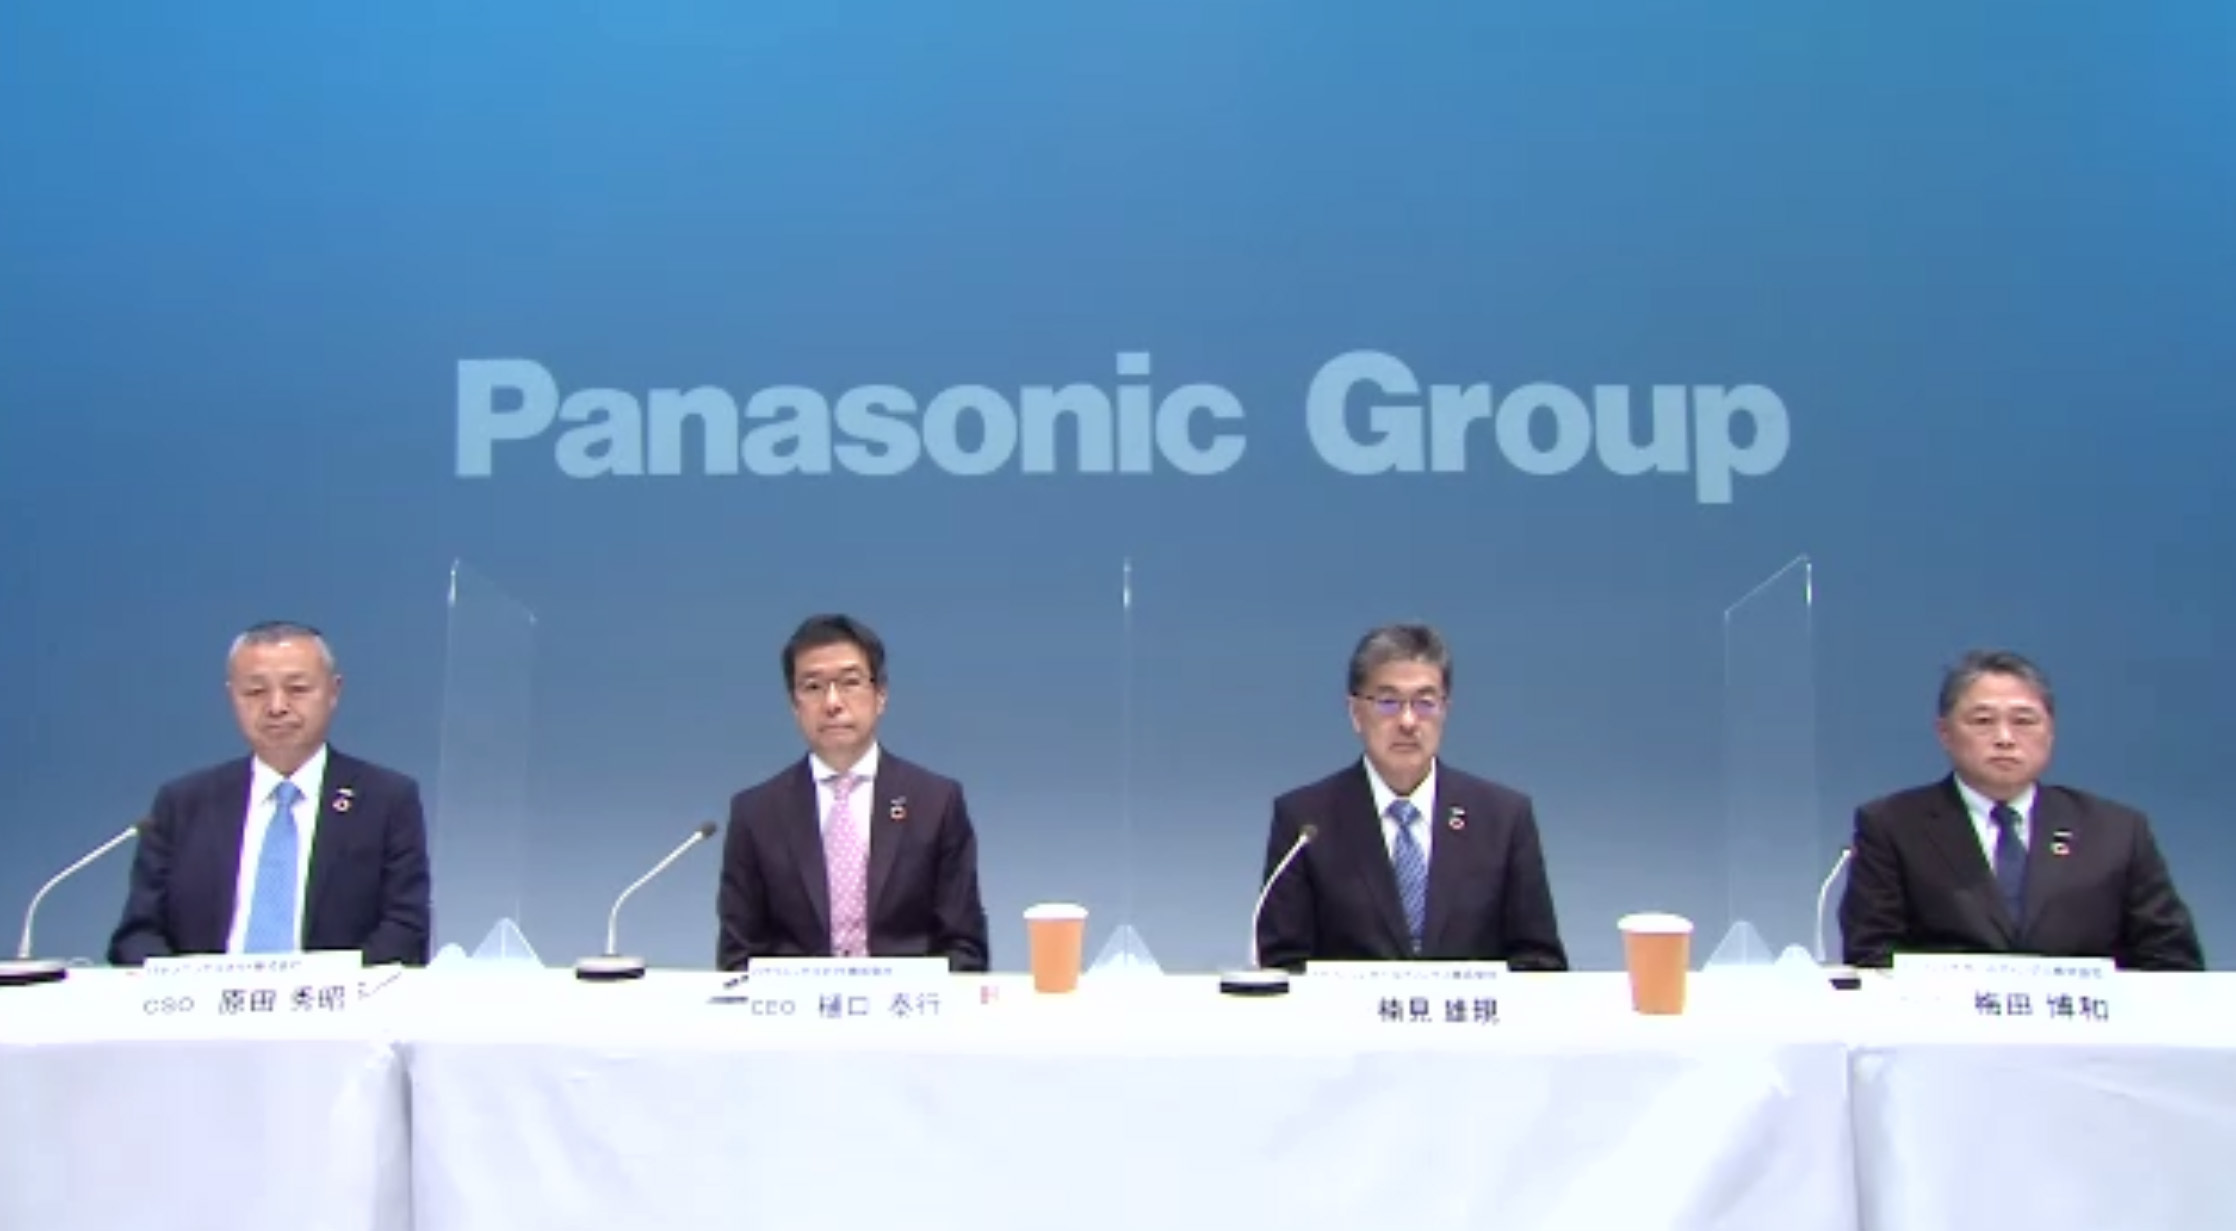 パナソニック ホールディングス グループCEOの楠見雄規氏（中央右）、グループCFOの梅田博和氏（右）、パナソニック コネク CEOの樋口泰行氏（中央左）、CSOの原田秀昭氏（左）